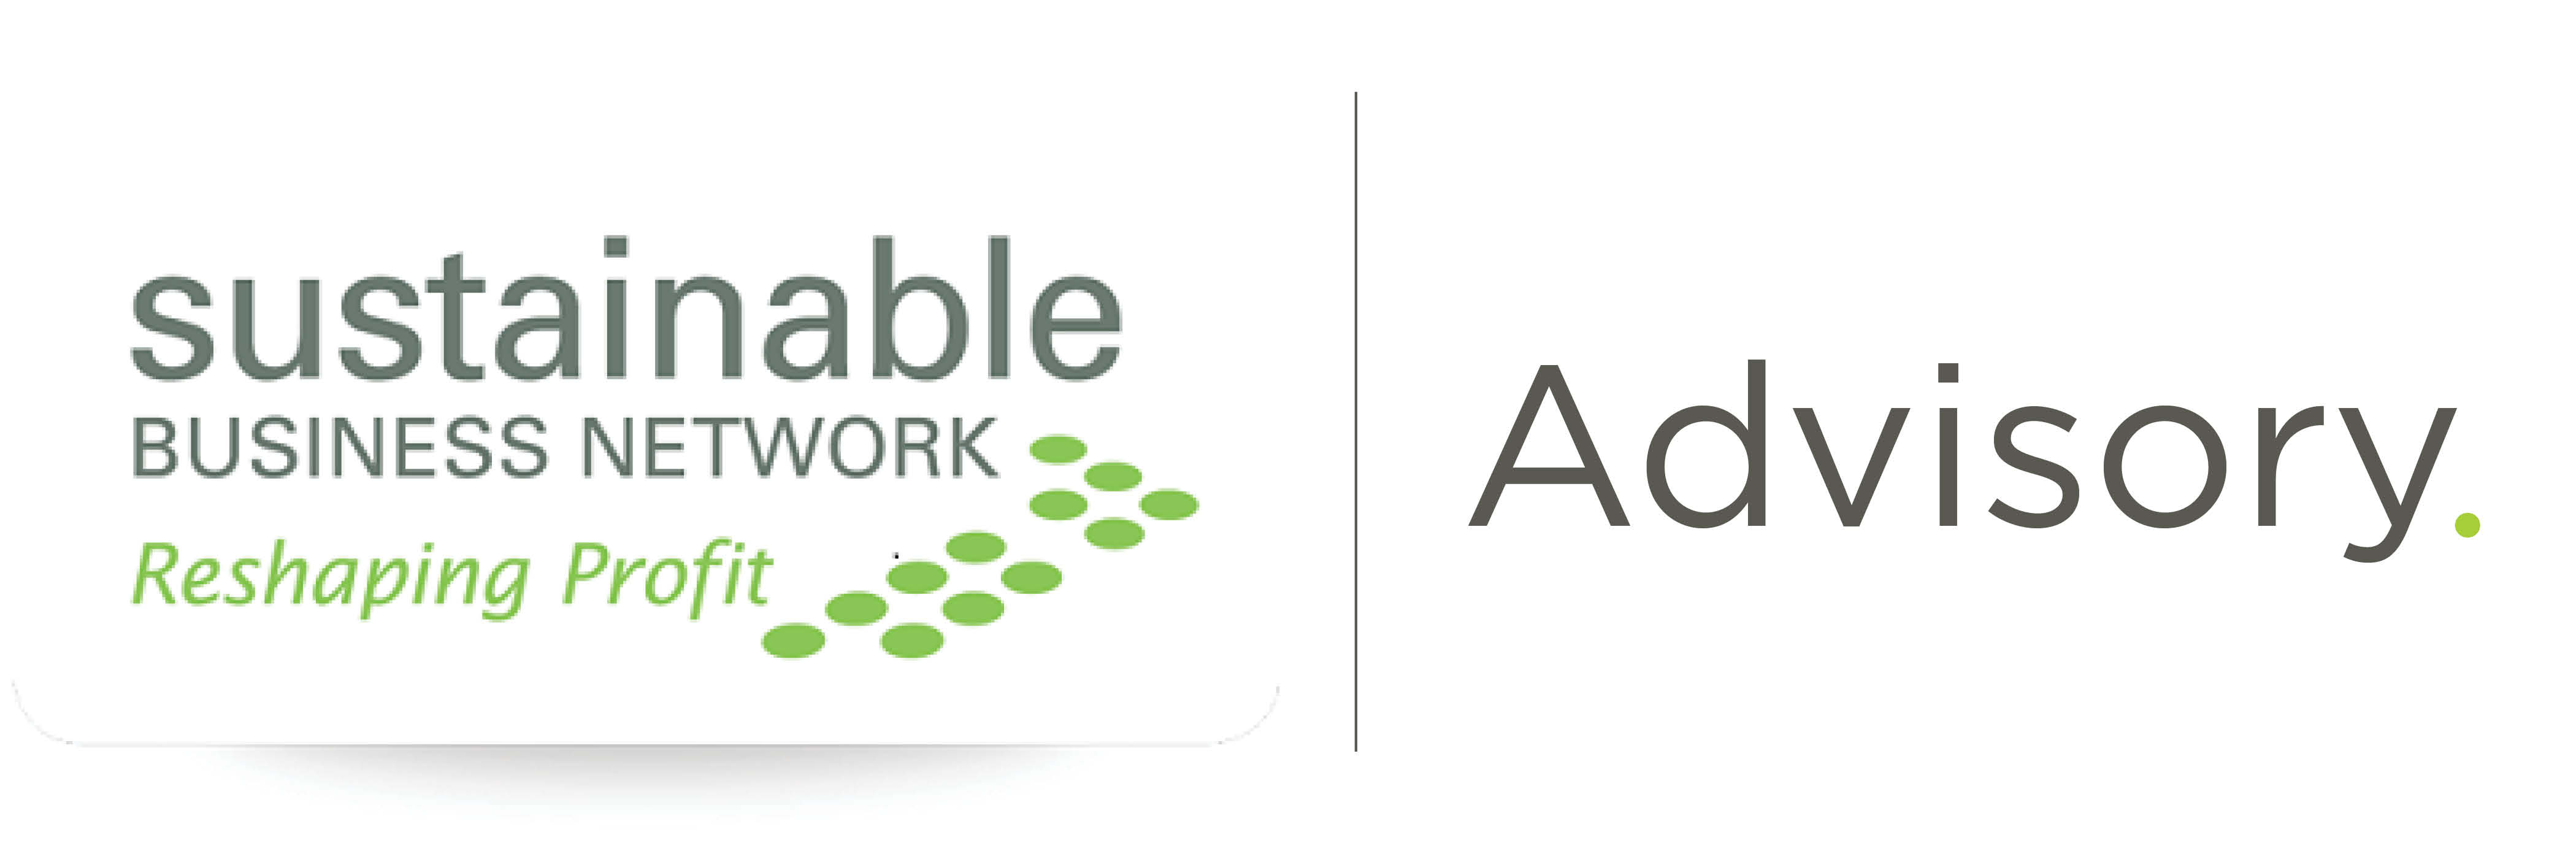 Sustainable Business Network - Advisory